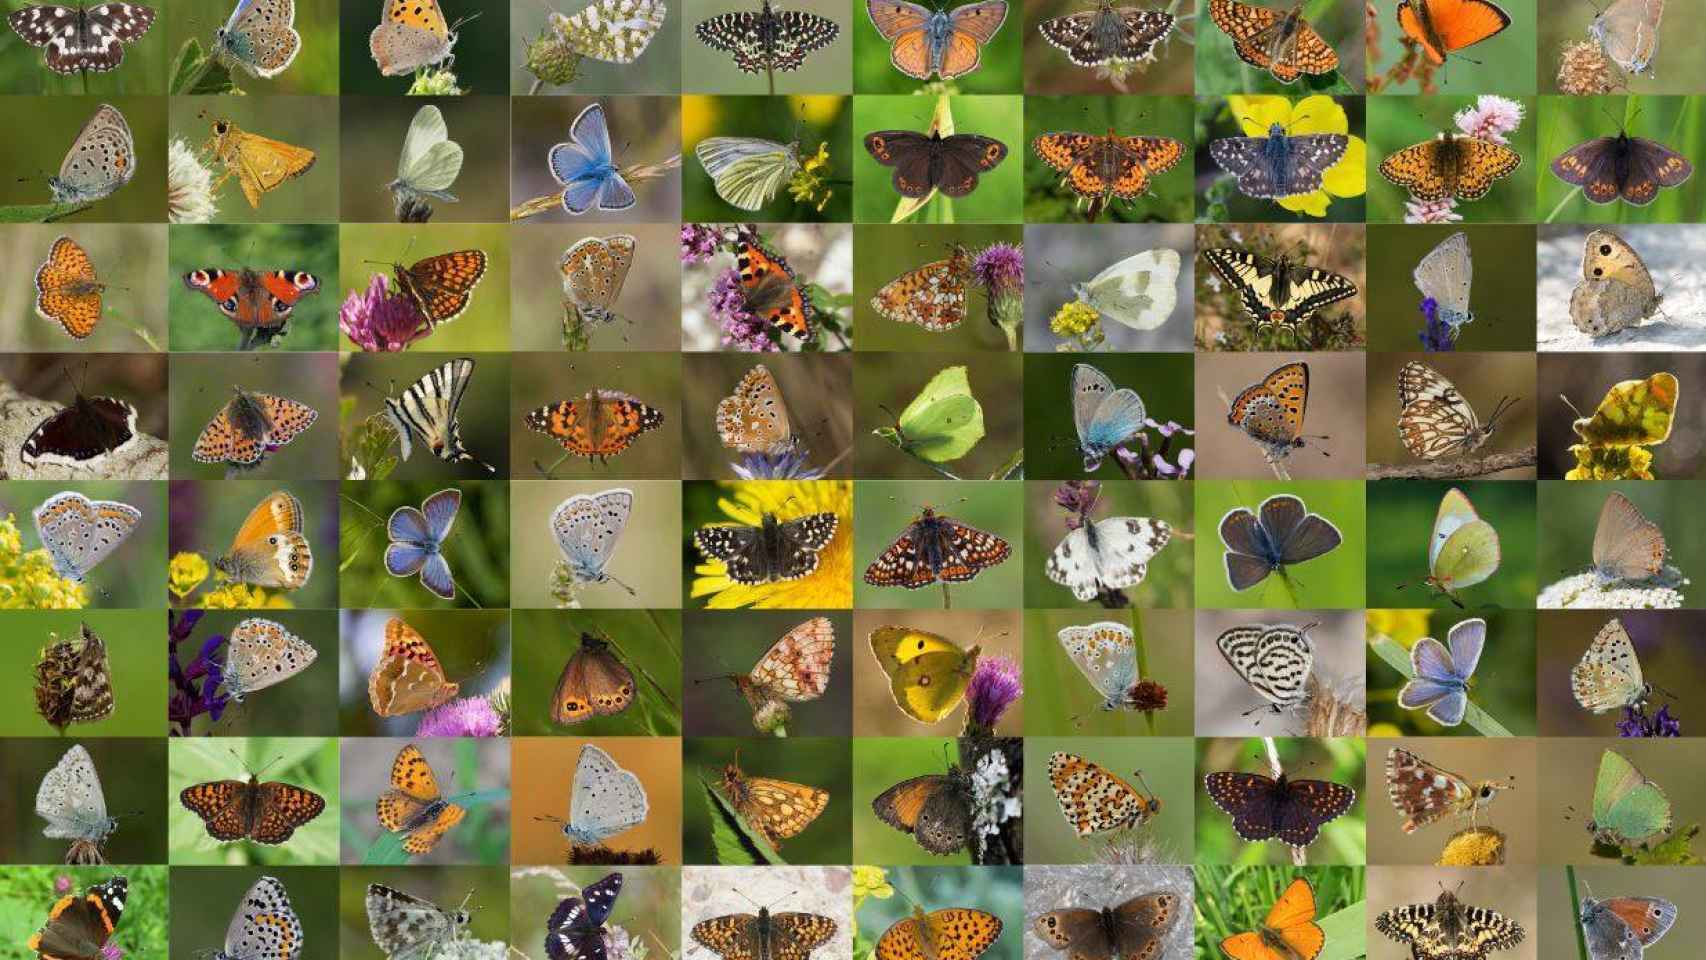 Imagen compuesta con algunas de las mariposas incluidas en la base de datos genética.